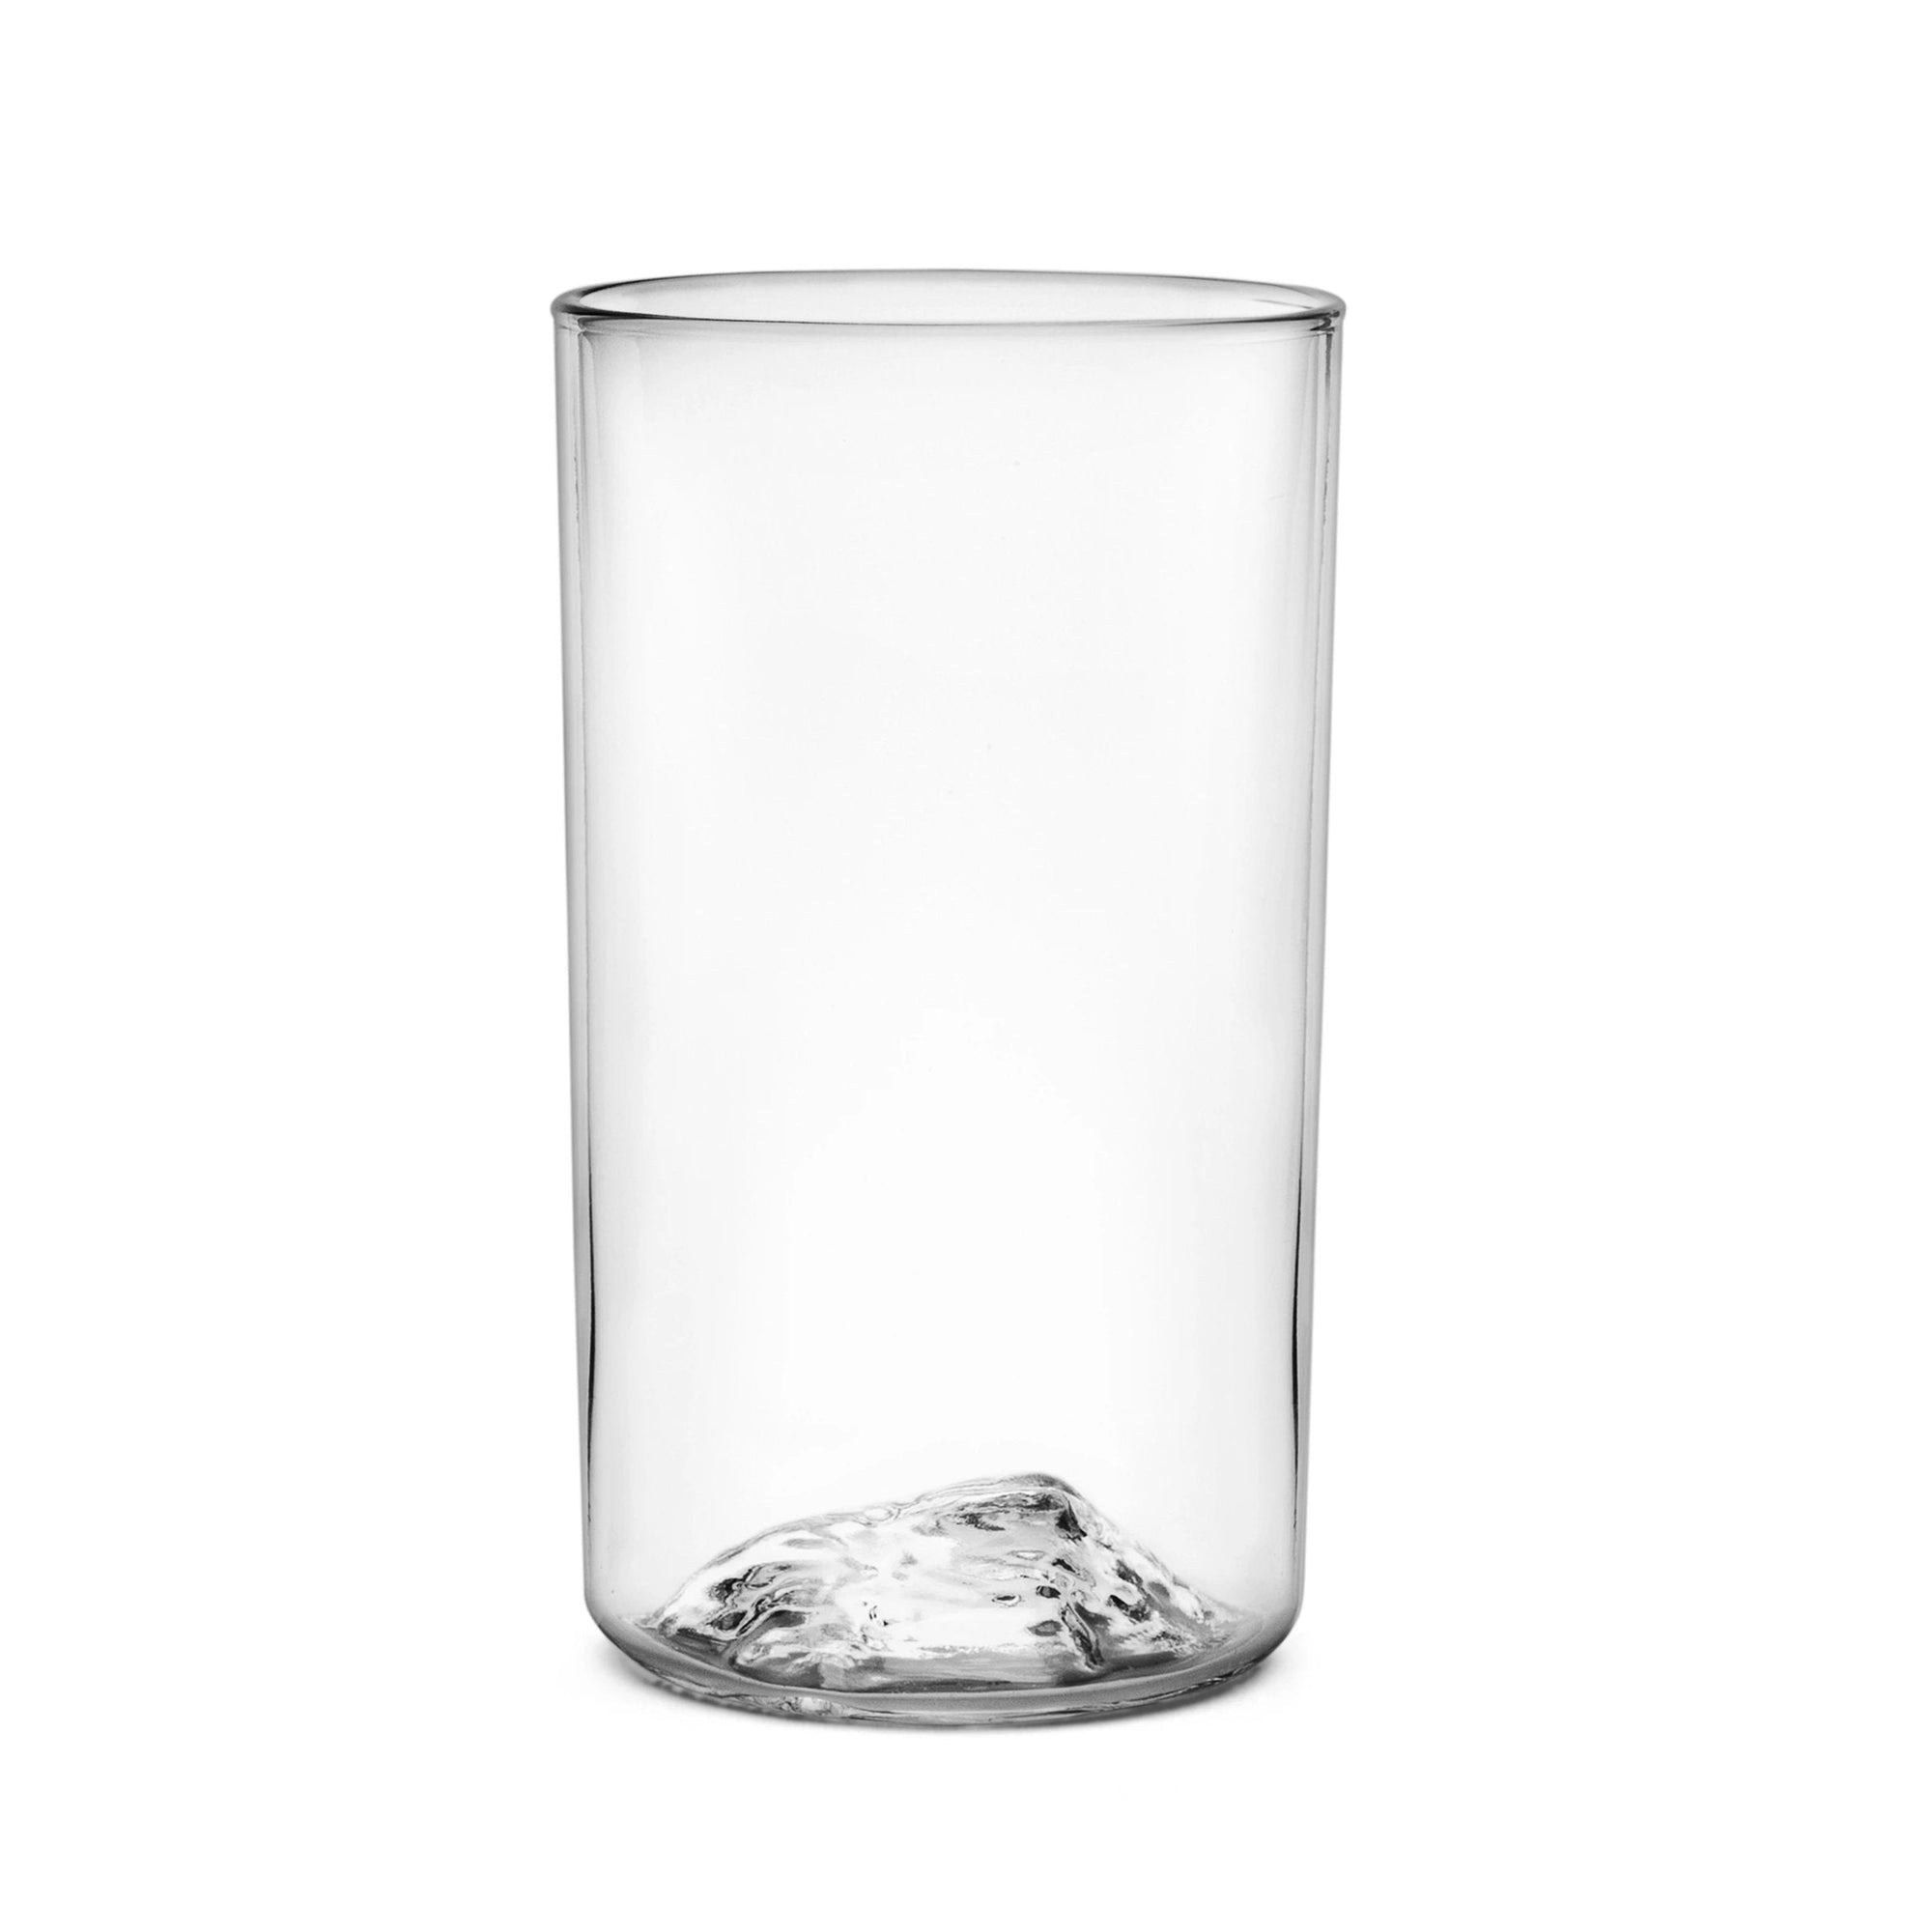 Stranger Brew Pint Glass Set – Mastodon Official Store